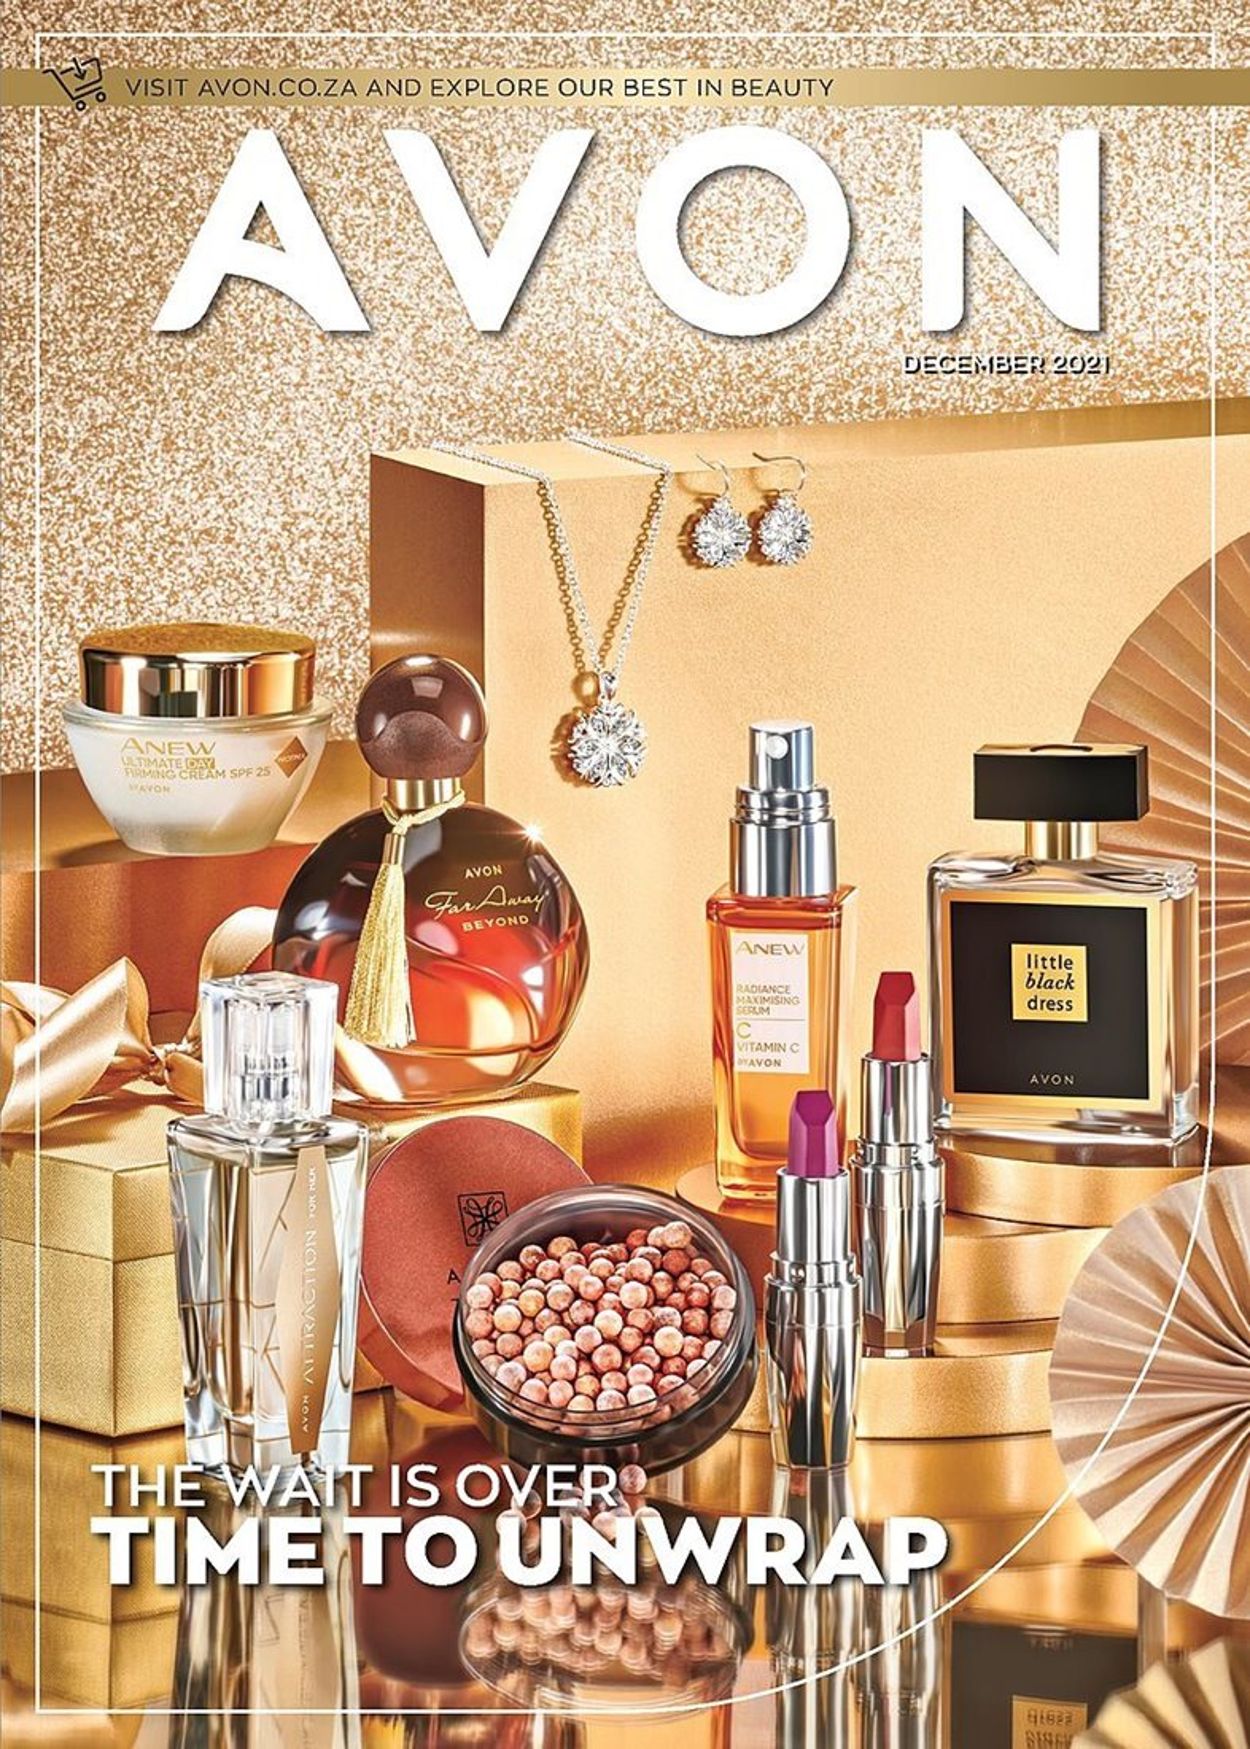 Como Encomendar Avon Online - O Novo Catálogo Avon